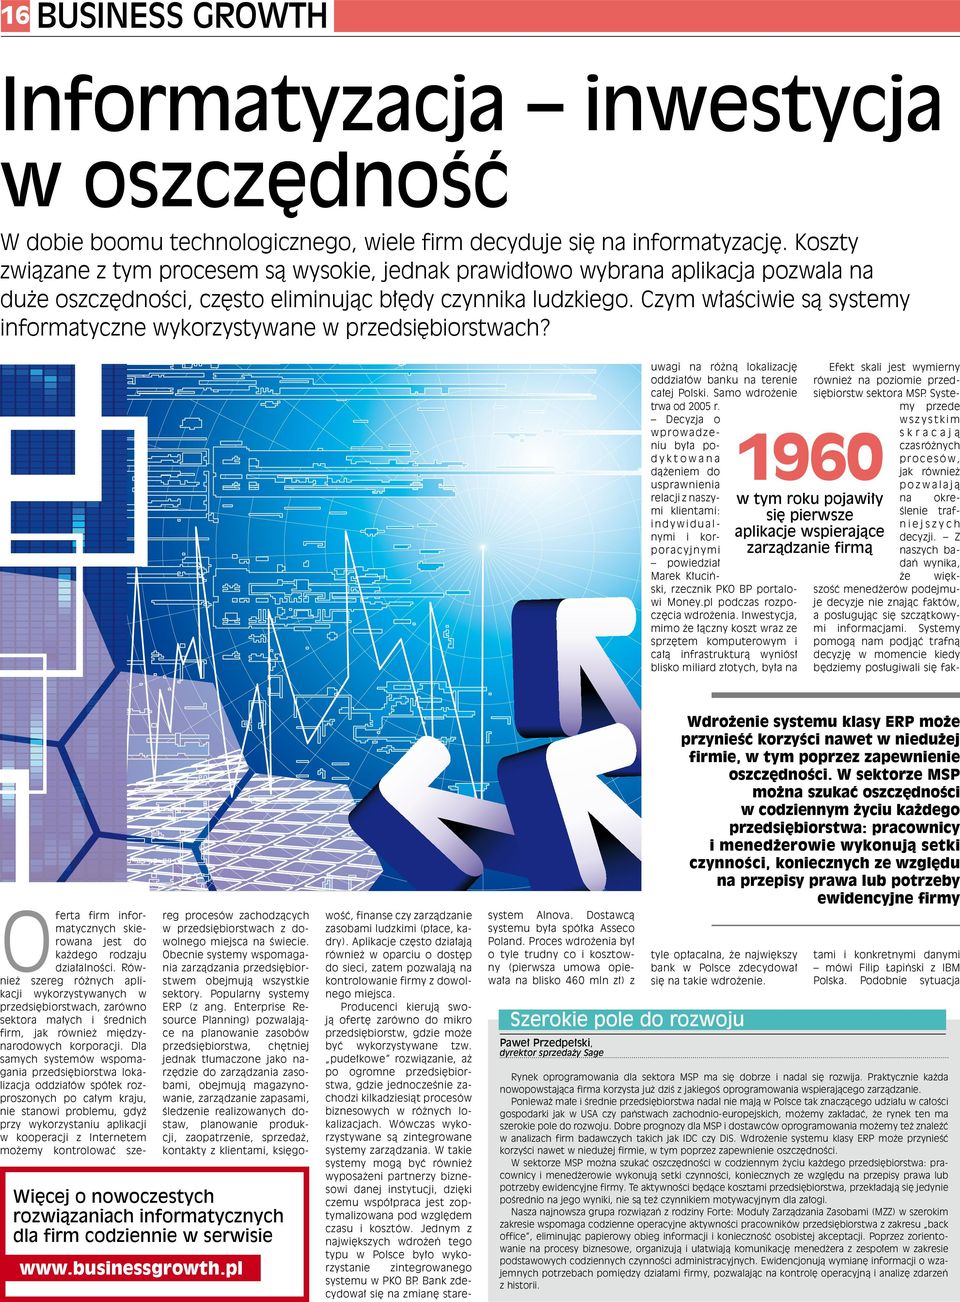 Czym właściwie są systemy informatyczne wykorzystywane w przedsiębiorstwach? uwagi na różną lokalizację oddziałów banku na terenie całej Polski. Samo wdrożenie trwa od 2005 r.